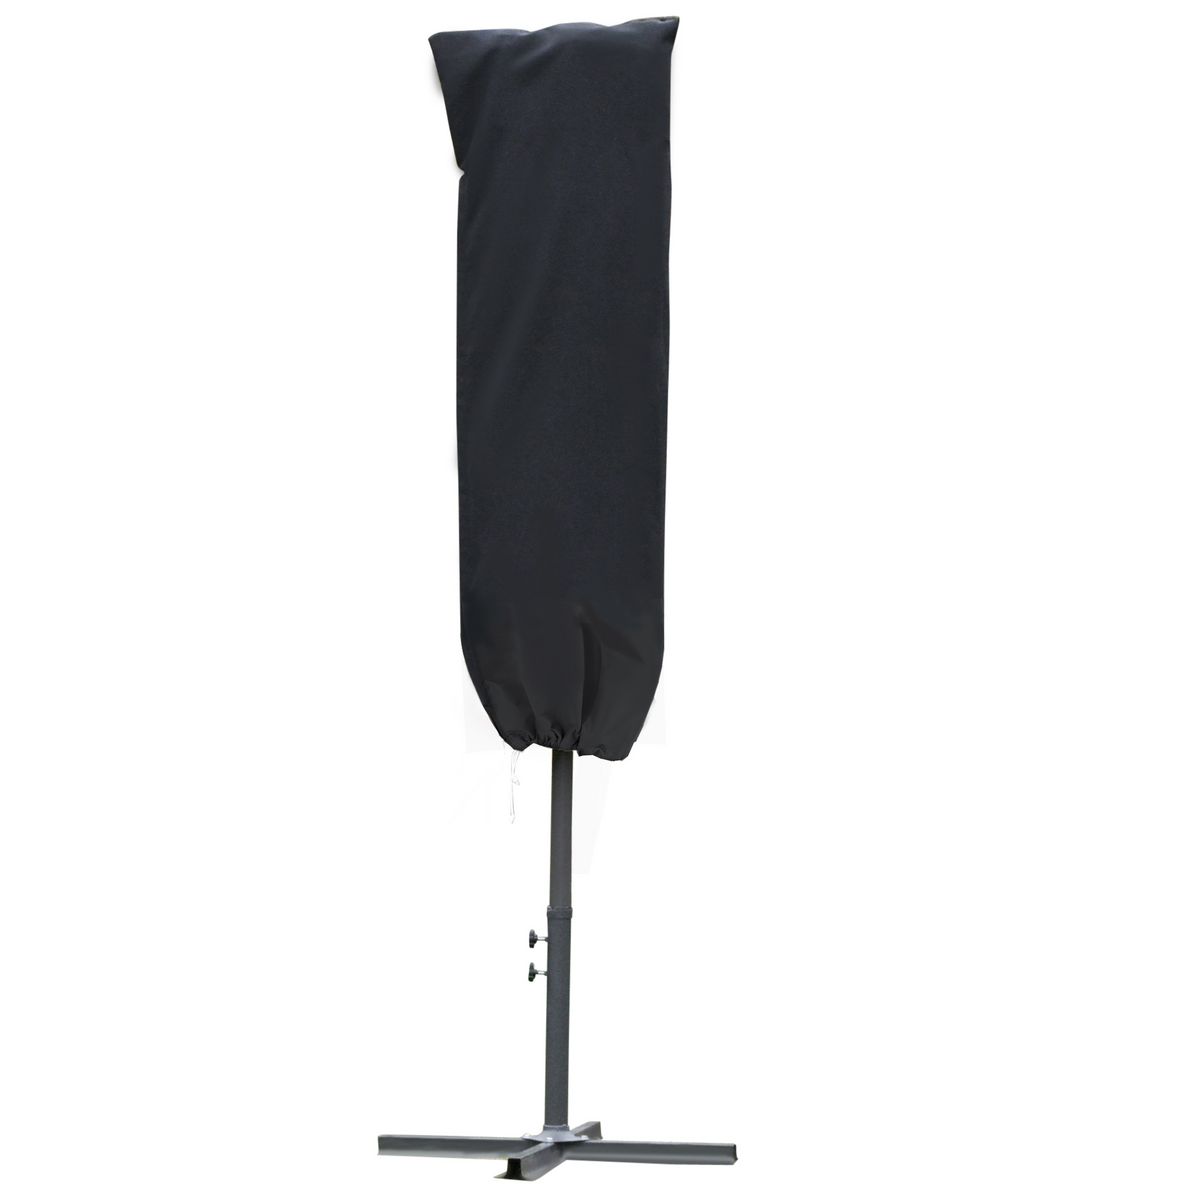 OUTSUNNY Housse de protection imperméable pour parasol droit avec fermeture éclair et cordon de serrage polyester oxford noir